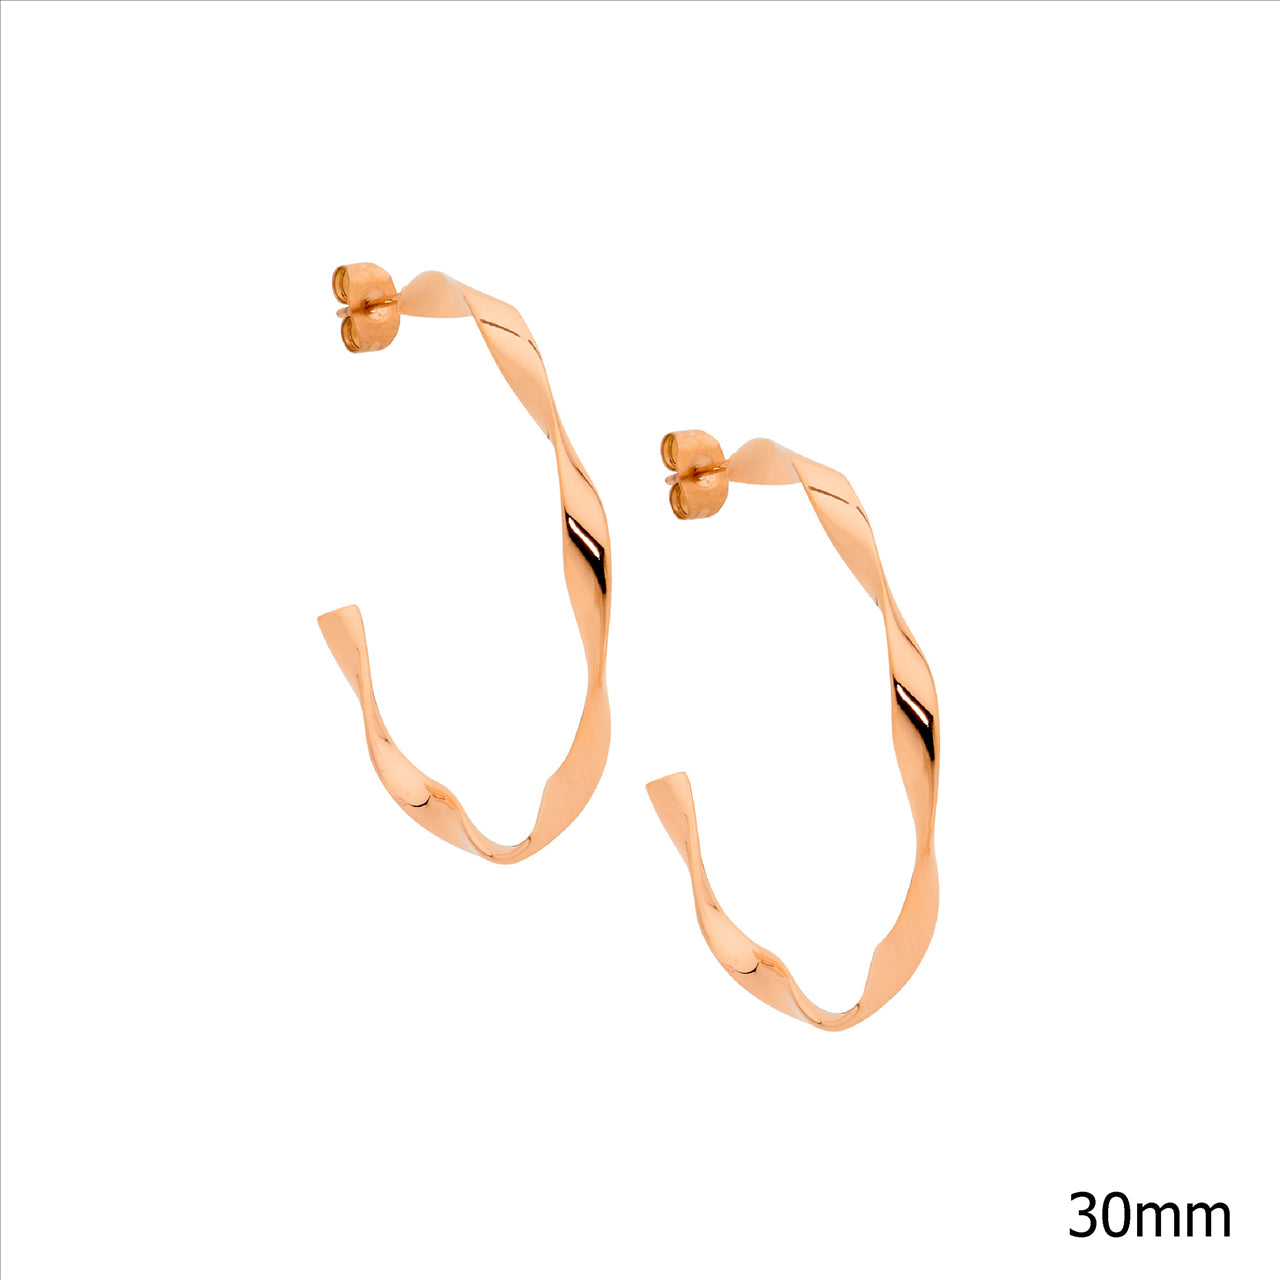 Stainless Steel, Rose Gold Plated 3cm Twist Hoop Earrings